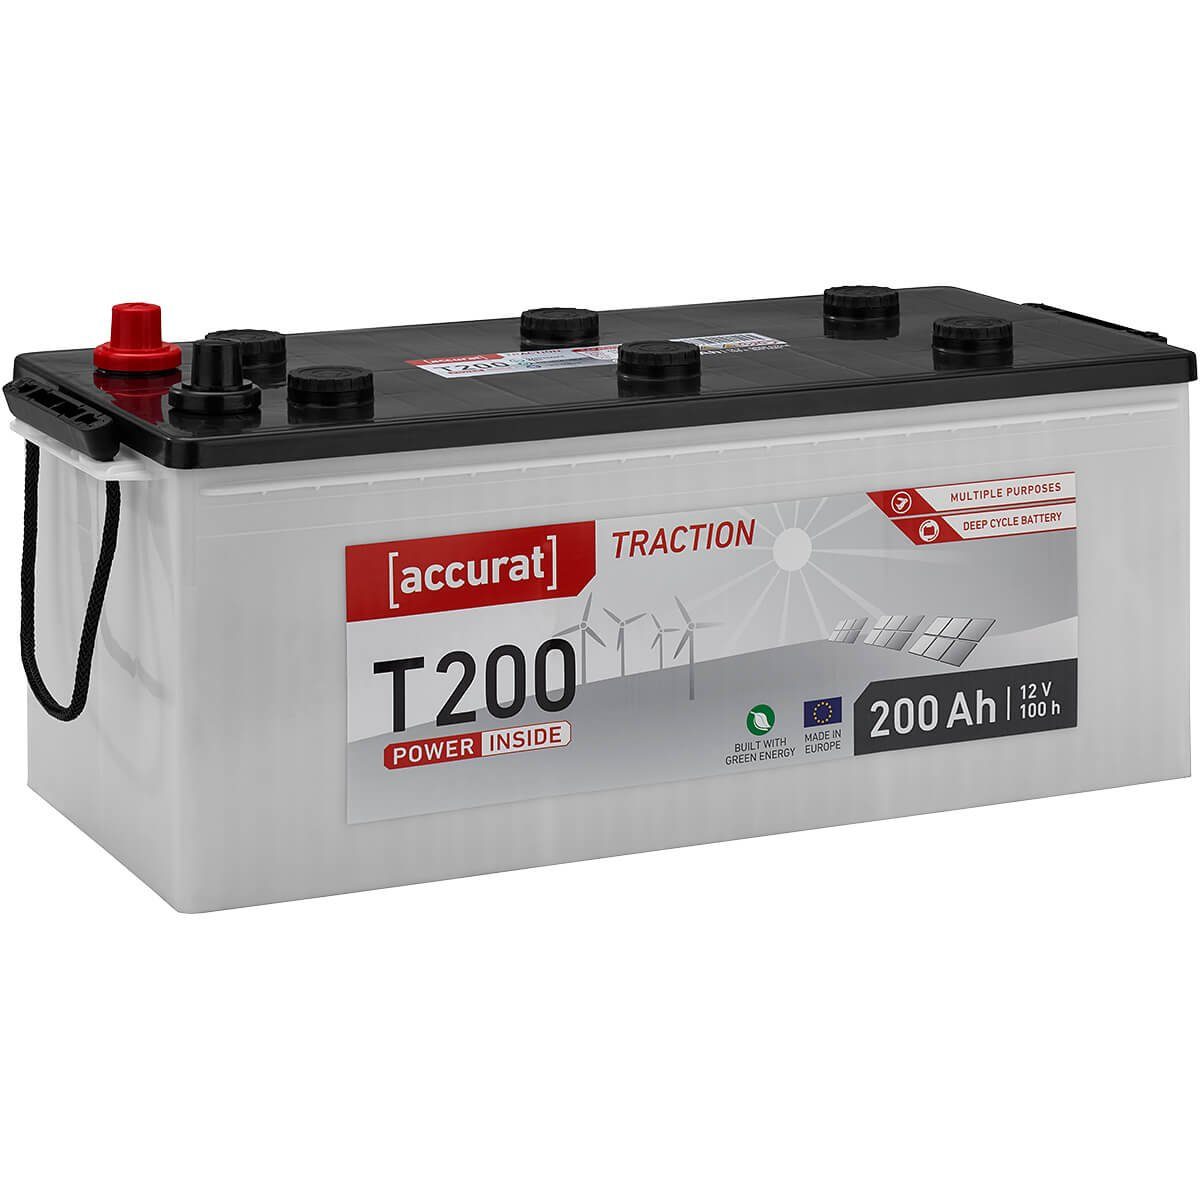 accurat 12V 200Ah Aufbaubatterie Solarbatterie Nassbatterie Batterie, (12 V)